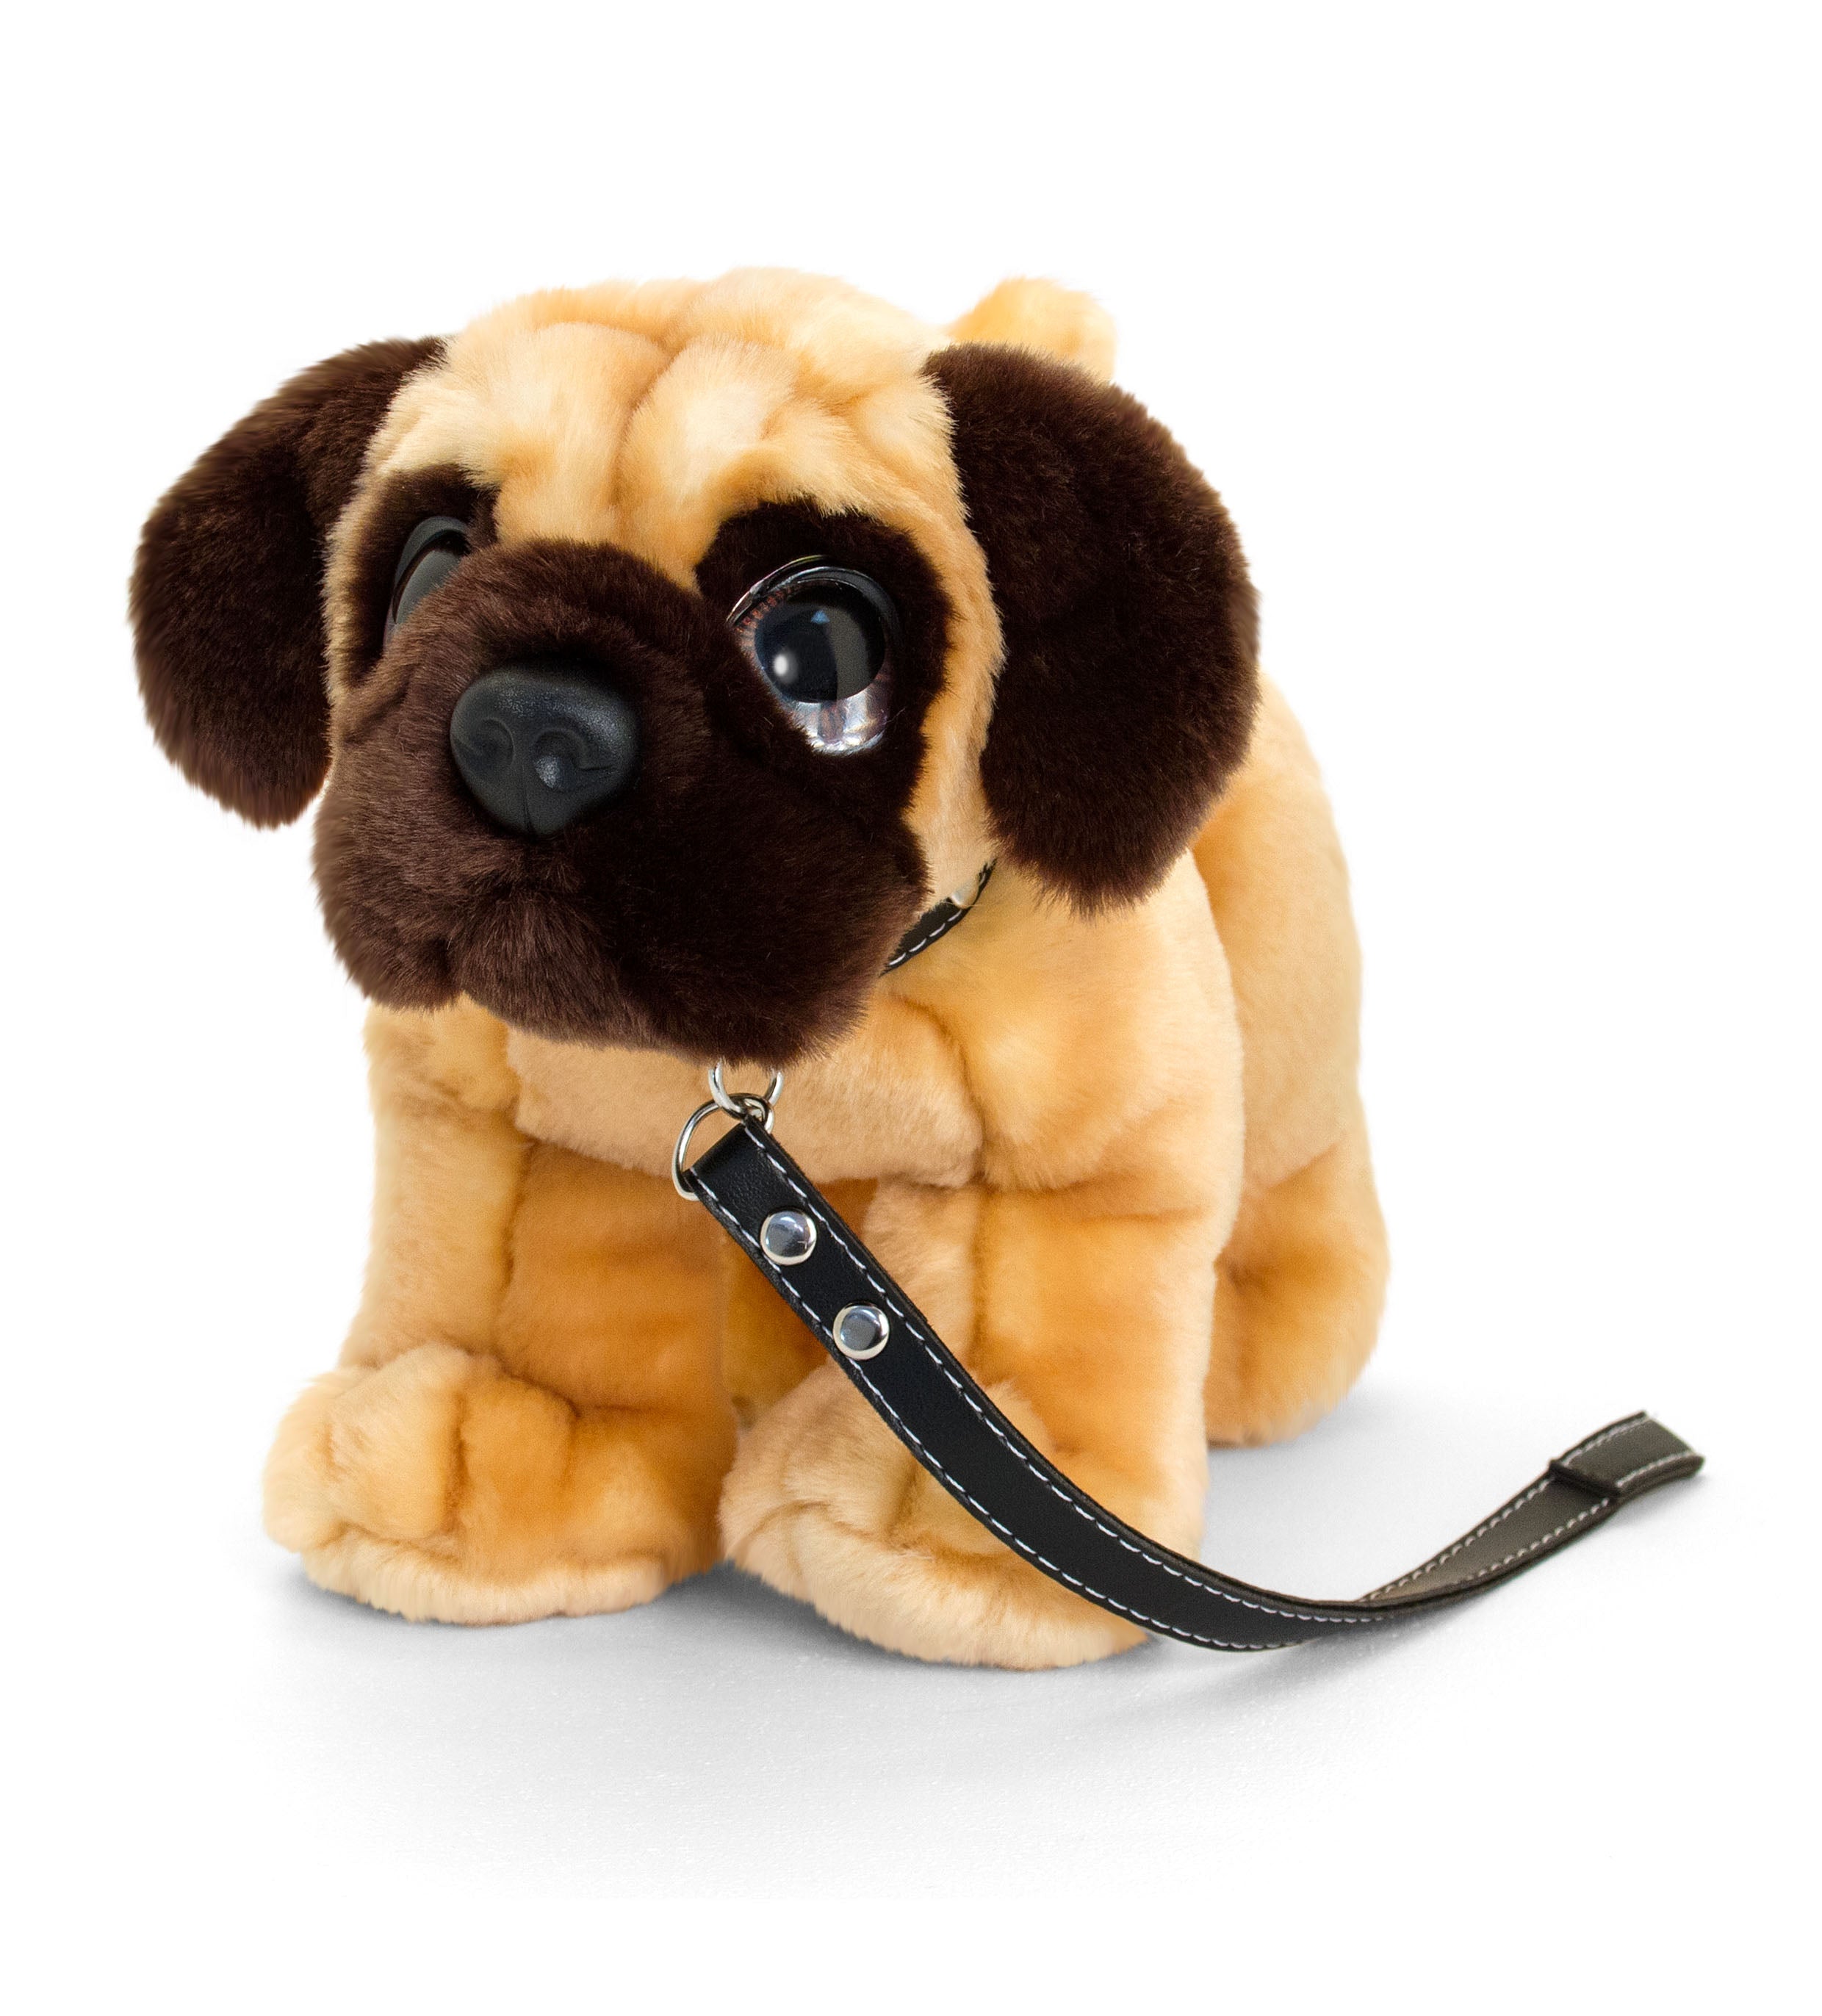 Keel-Toys-30cm-Signature-Cuddle-Puppy-Dog-On-Lead-Pug